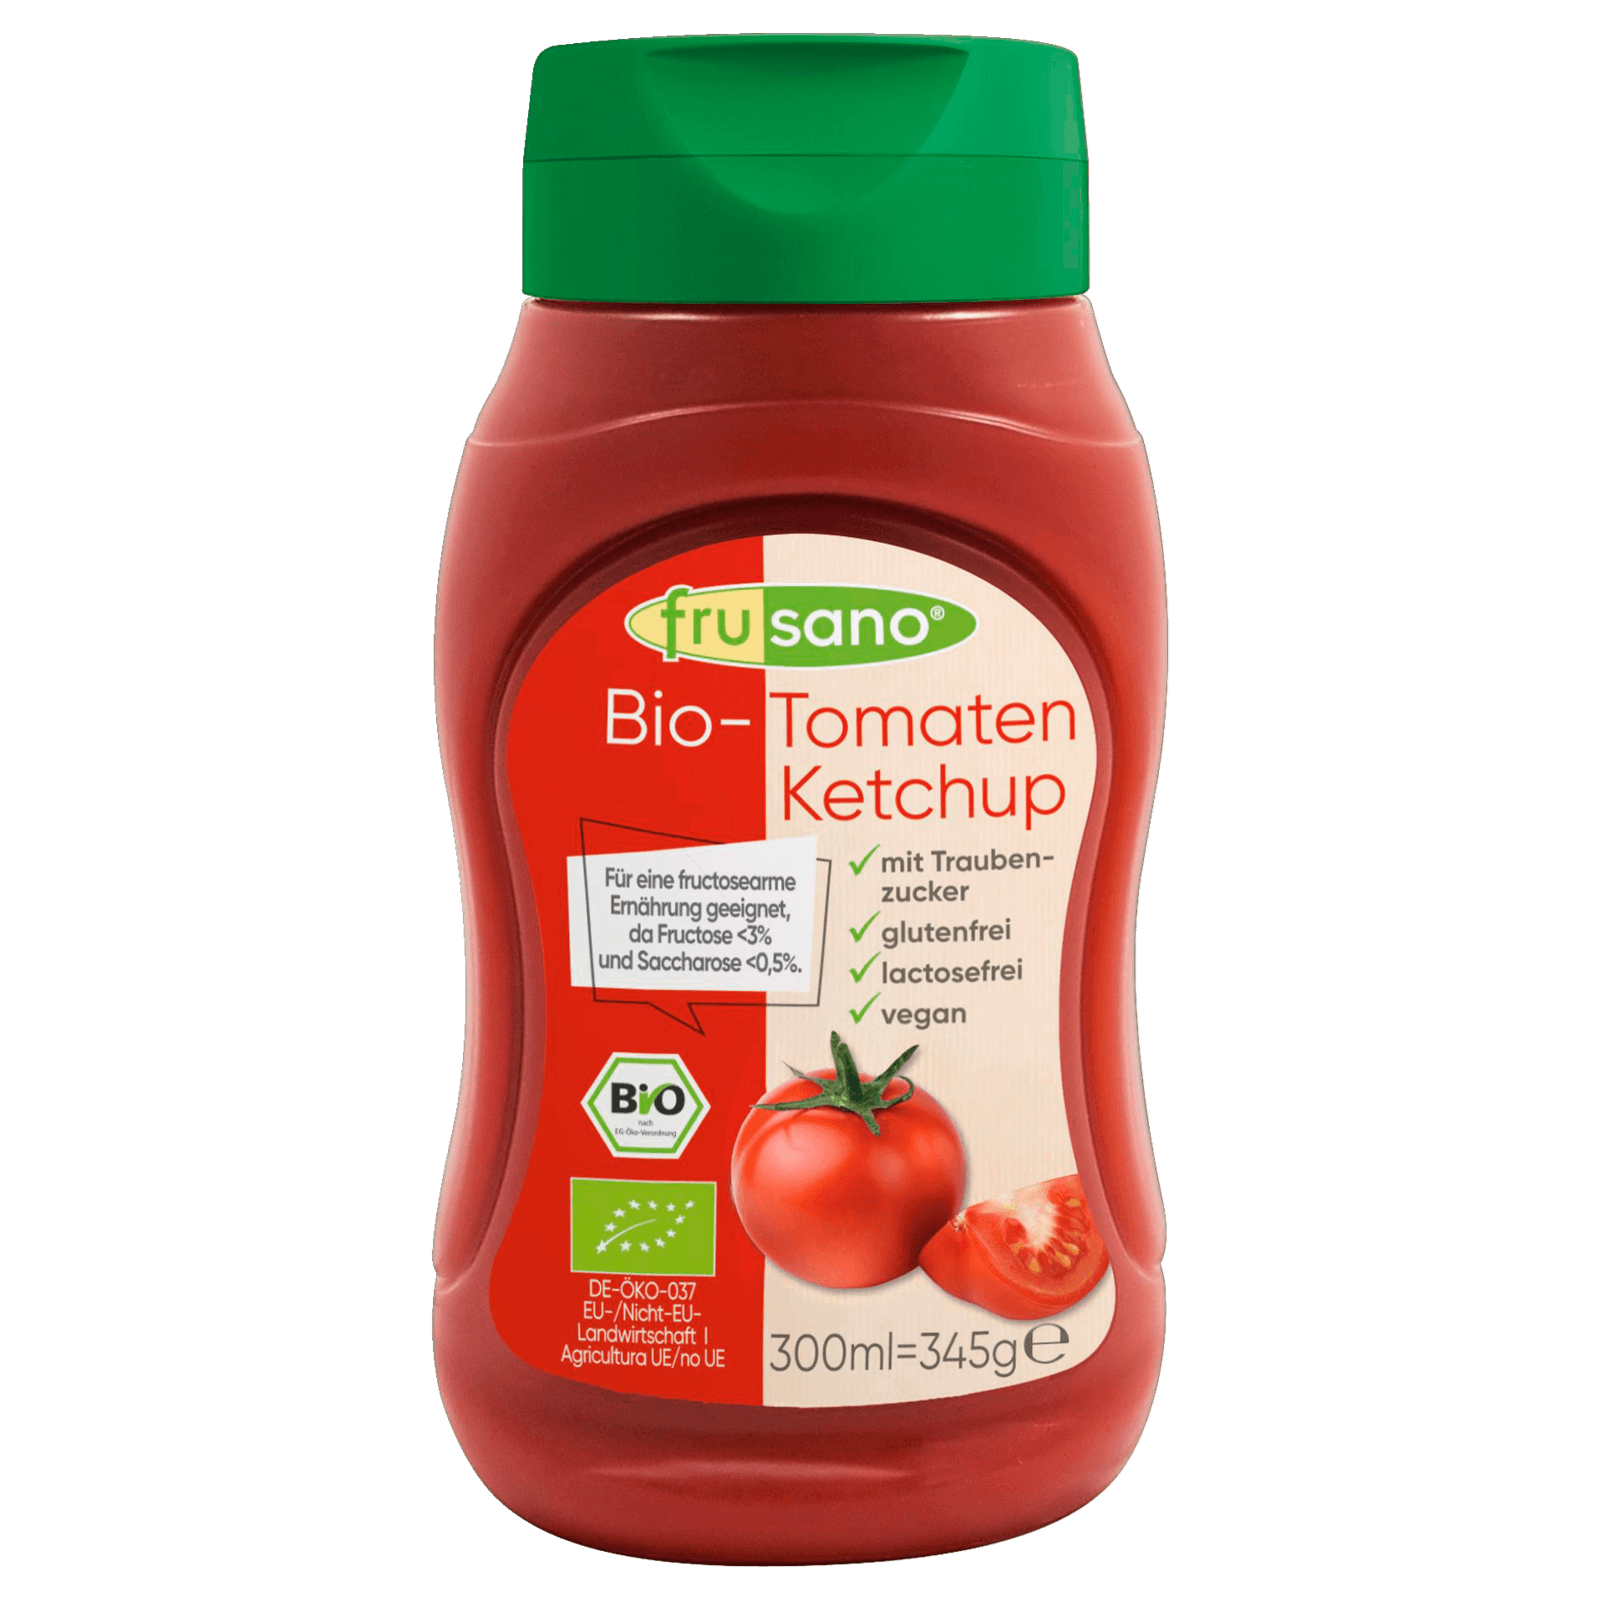 Frusano Bio Tomatenketchup 300ml bei REWE online bestellen!